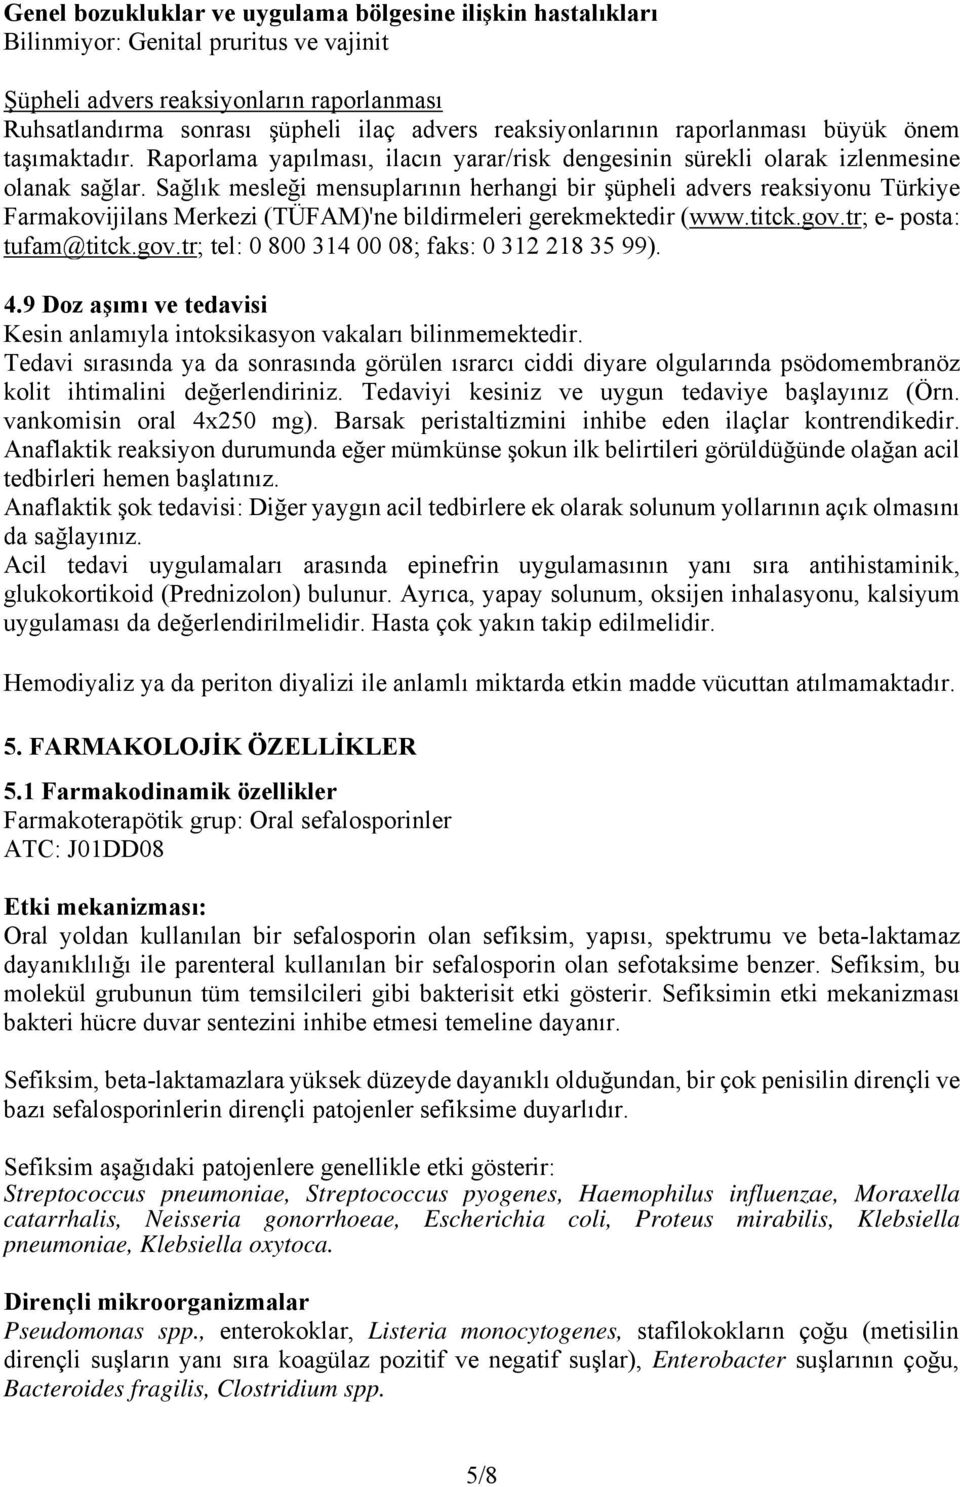 Sağlık mesleği mensuplarının herhangi bir şüpheli advers reaksiyonu Türkiye Farmakovijilans Merkezi (TÜFAM)'ne bildirmeleri gerekmektedir (www.titck.gov.